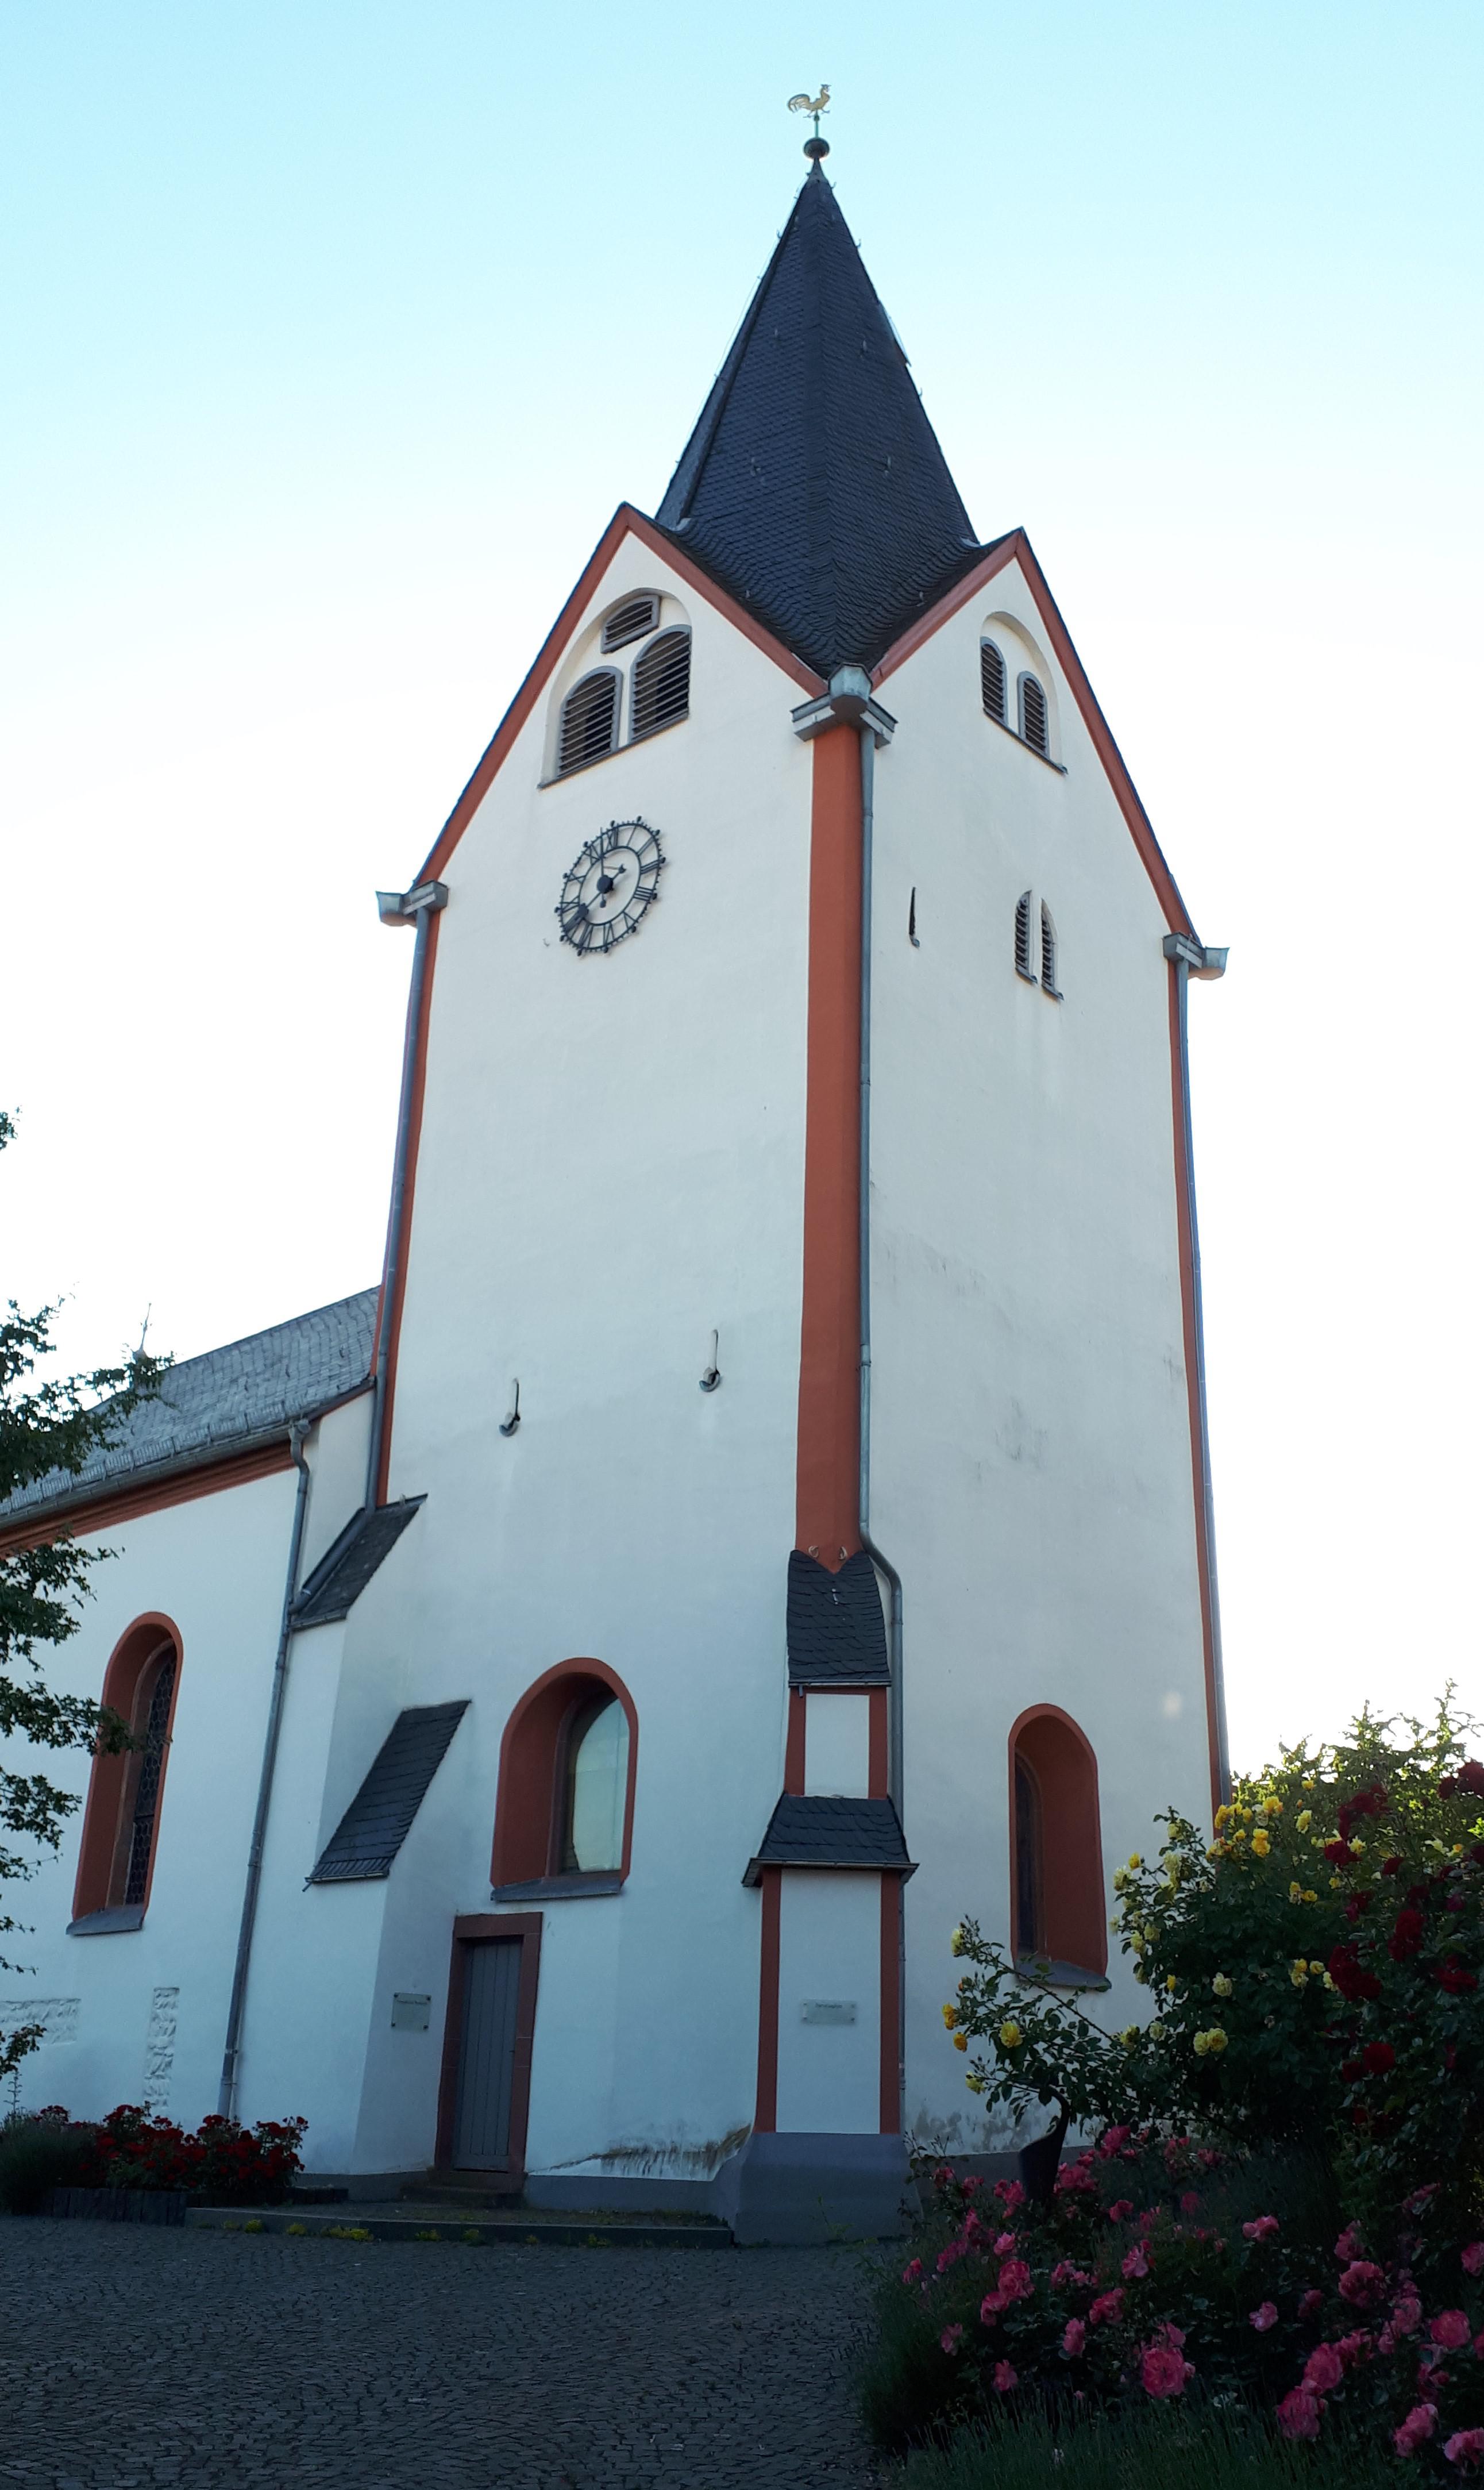 Bild 2 Evangelische Kirche Kloppenheim - Evangelische Bodelschwingh-Kirchengemeinde Wiesbaden-Kloppenheim/Hessloch in Wiesbaden